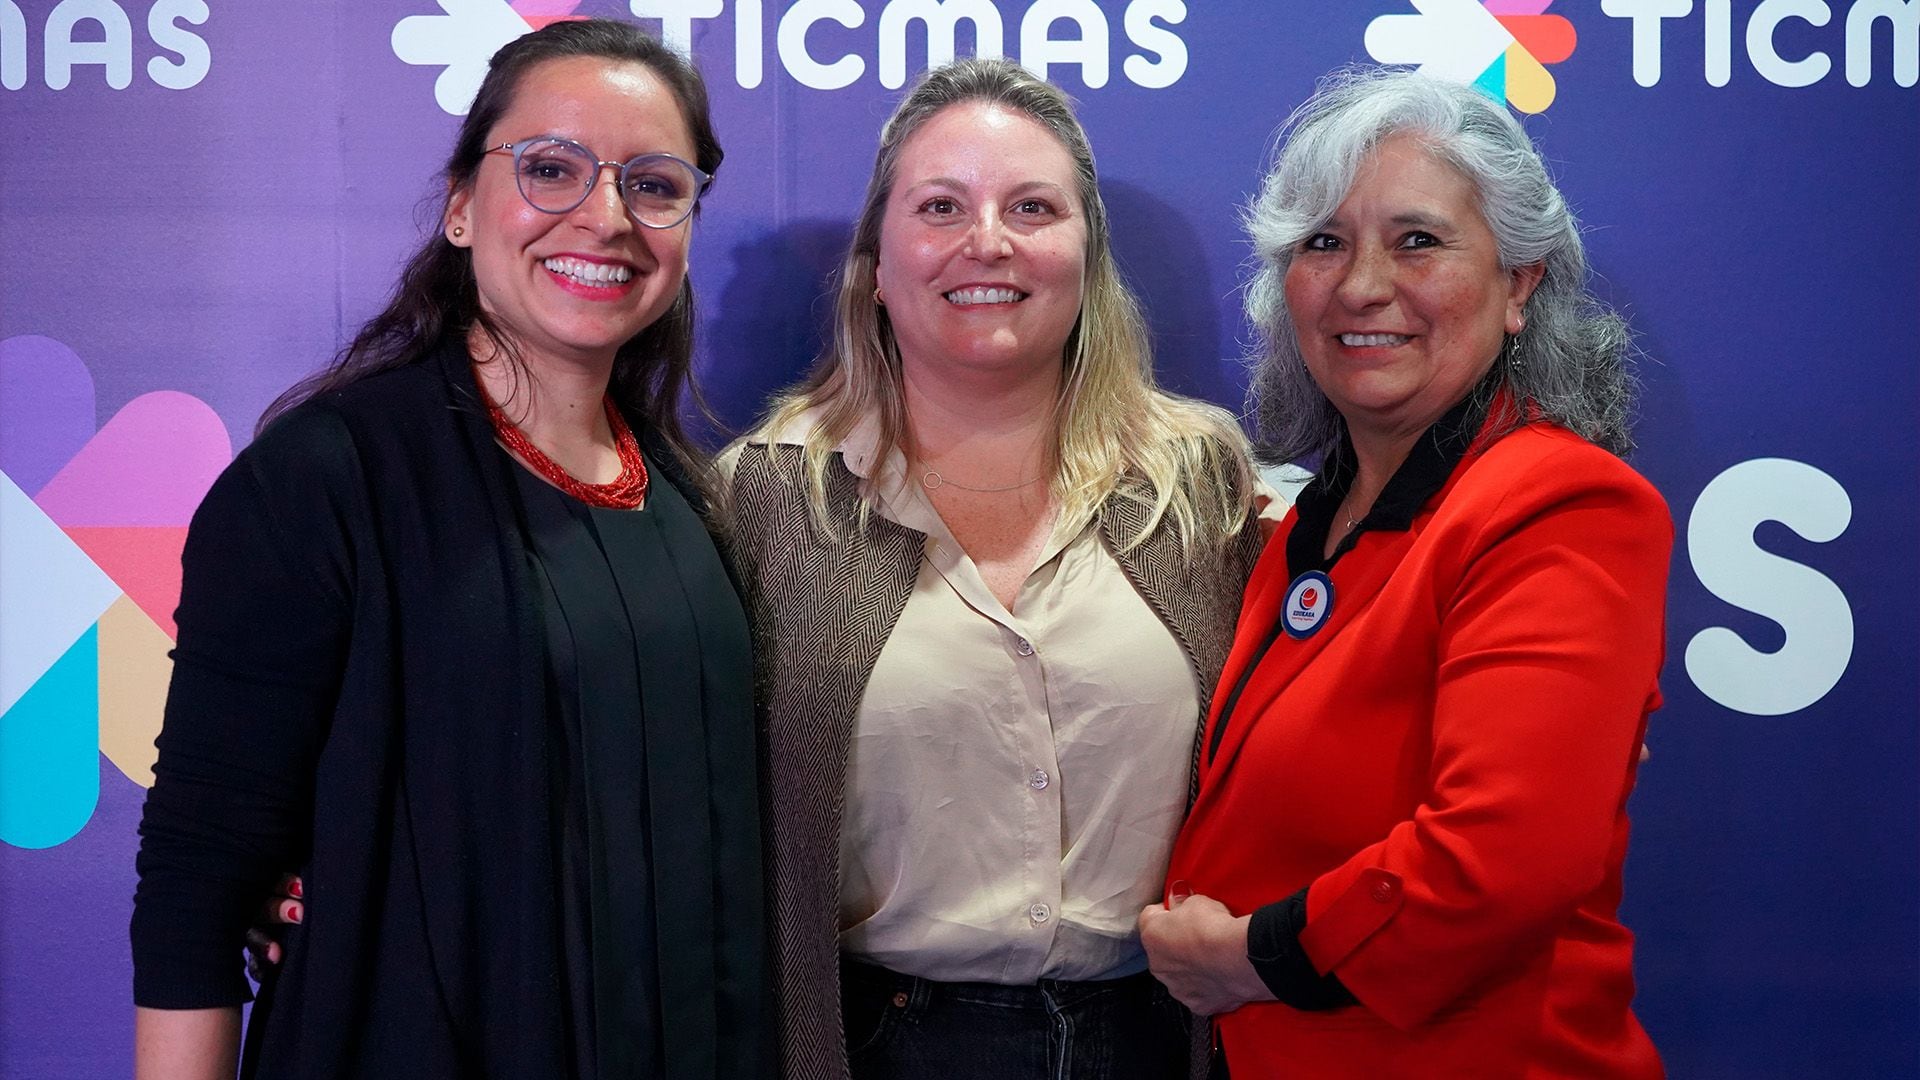 Laura Segura Guzmán, Rosario Jiménez Llosa y Viviana Suárez   conversaron con Ticmas en la FIL de Buenos Aires